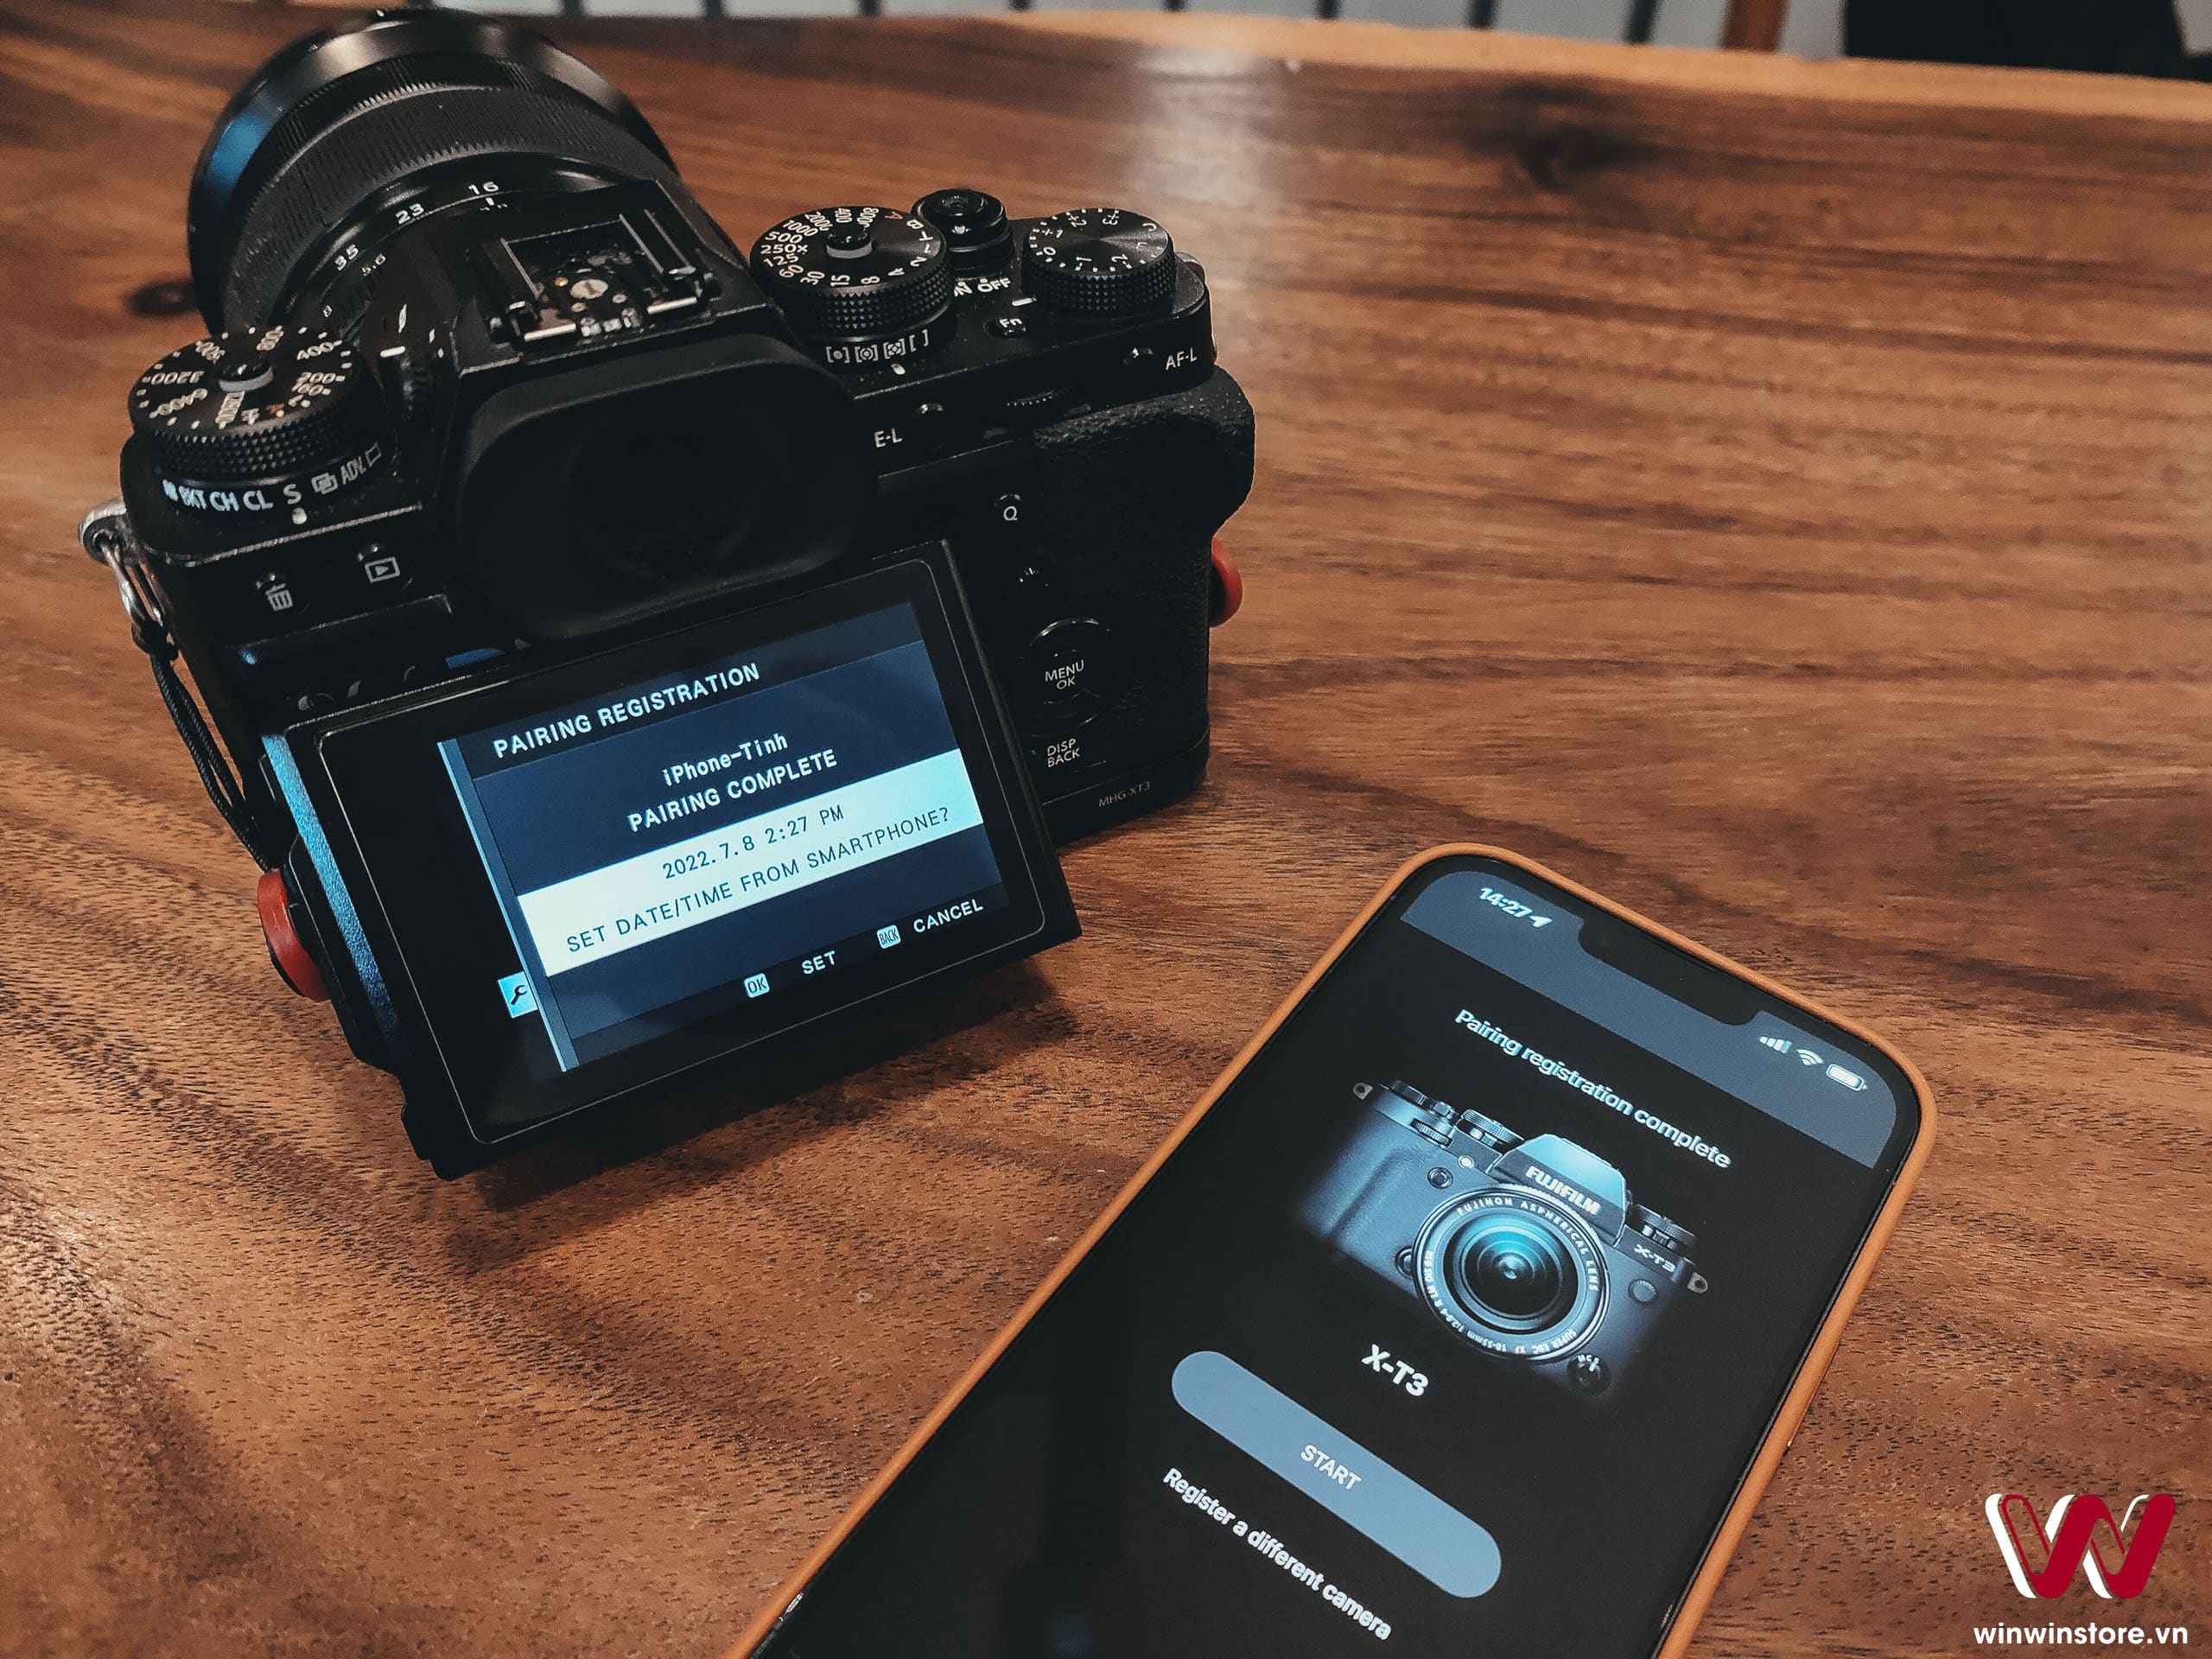 Hướng dẫn kết nối Bluetooth từ máy ảnh Fujifilm đến điện thoại của bạn